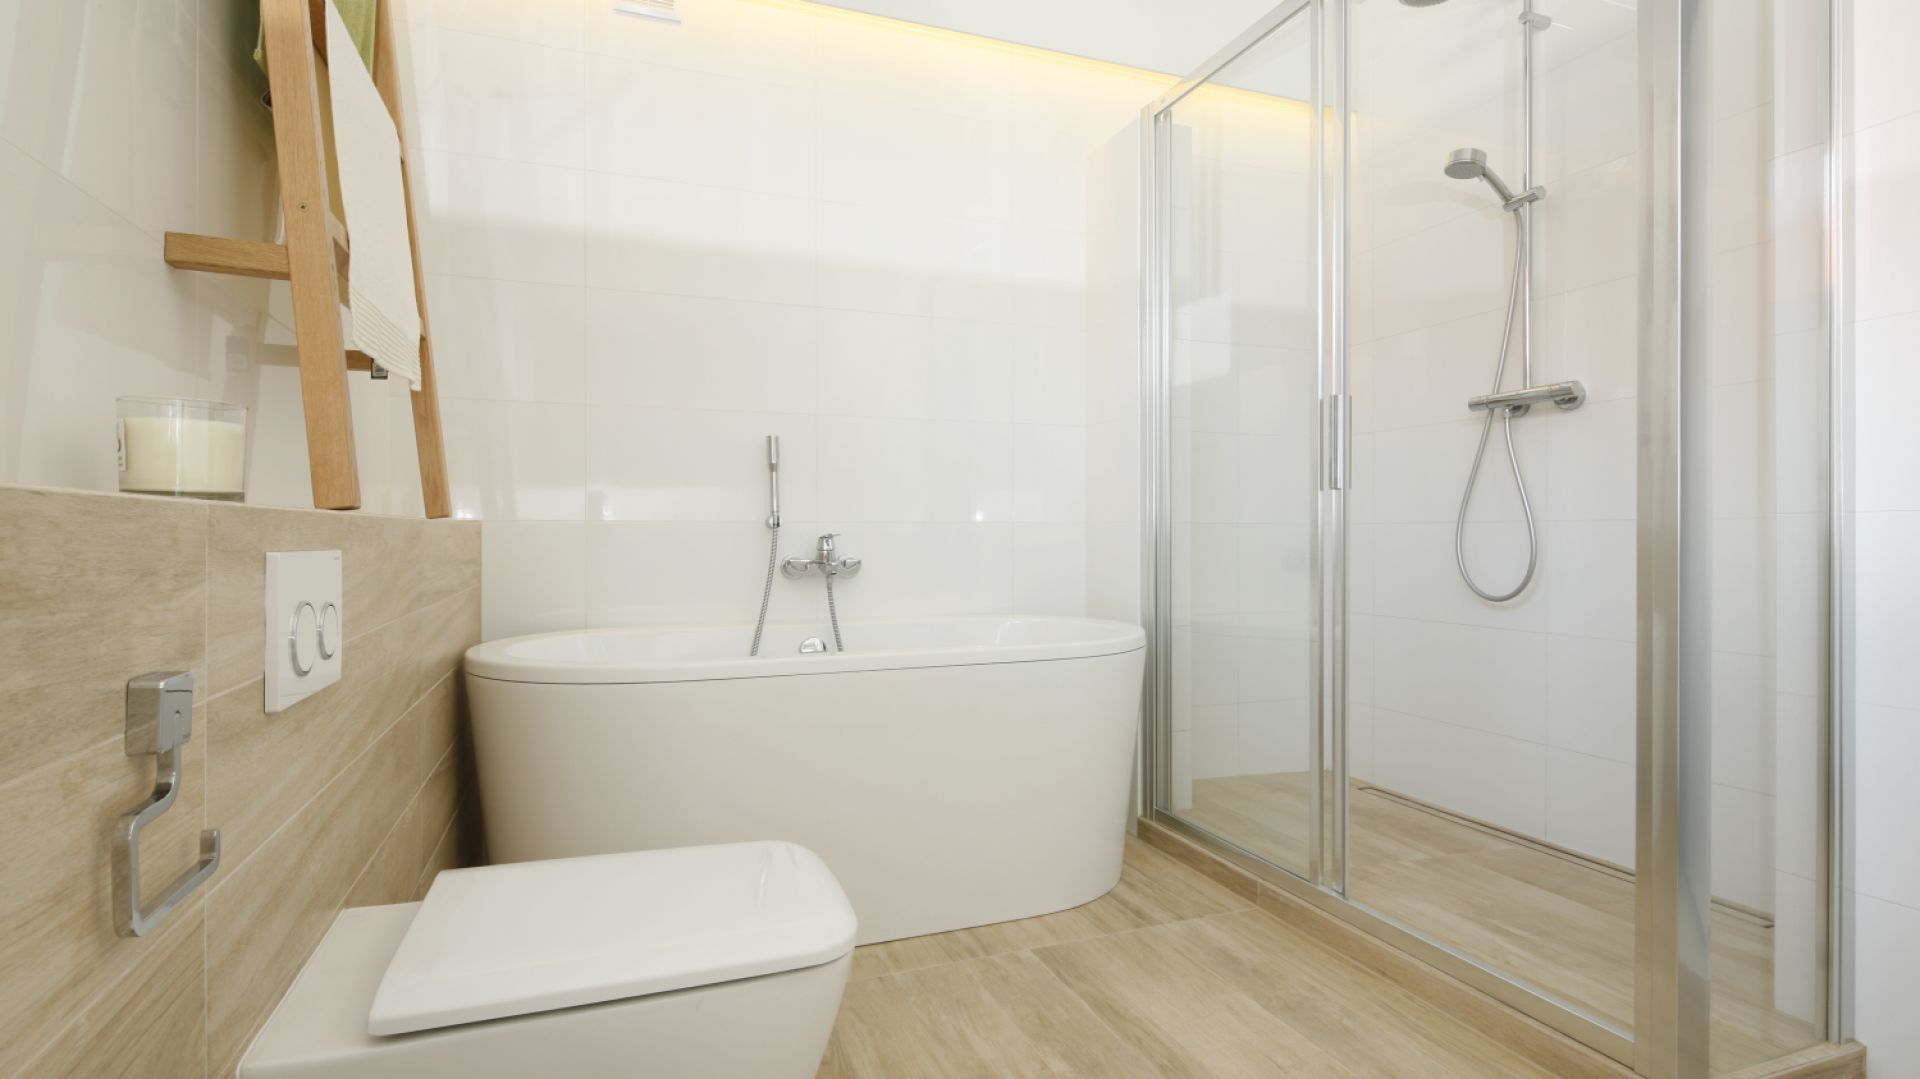 Biała łazienka ocieplona drewnem: 10 projektów z polskich domów